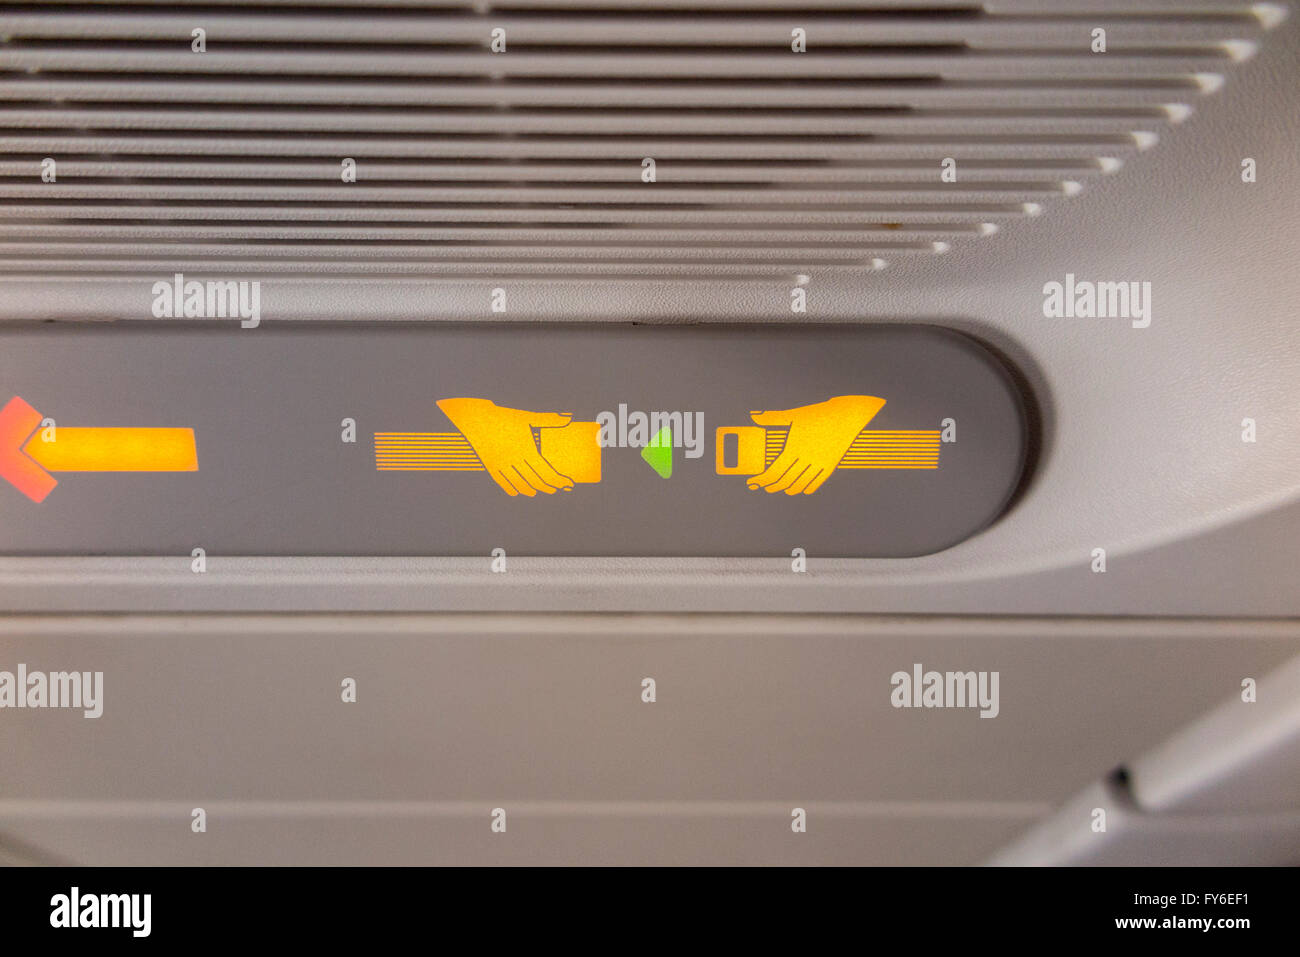 Avion attacher la ceinture de sécurité / ceinture' lumineuses éclairées et  éclairés pendant un vol en avion A319 / avion / avion Photo Stock - Alamy